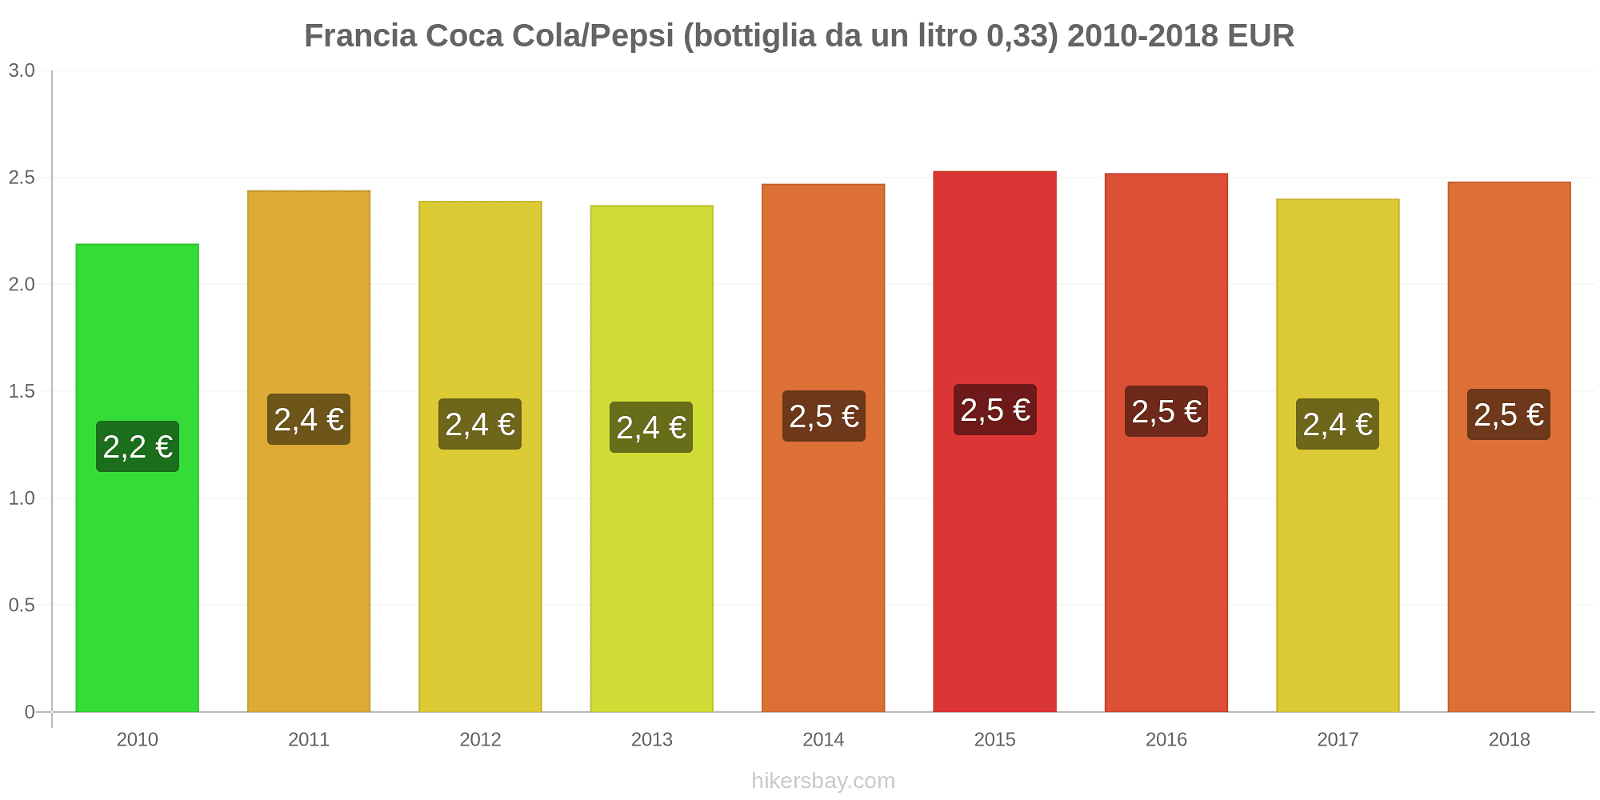 Francia cambi di prezzo Coca-Cola/Pepsi (bottiglia da 0.33 litri) hikersbay.com